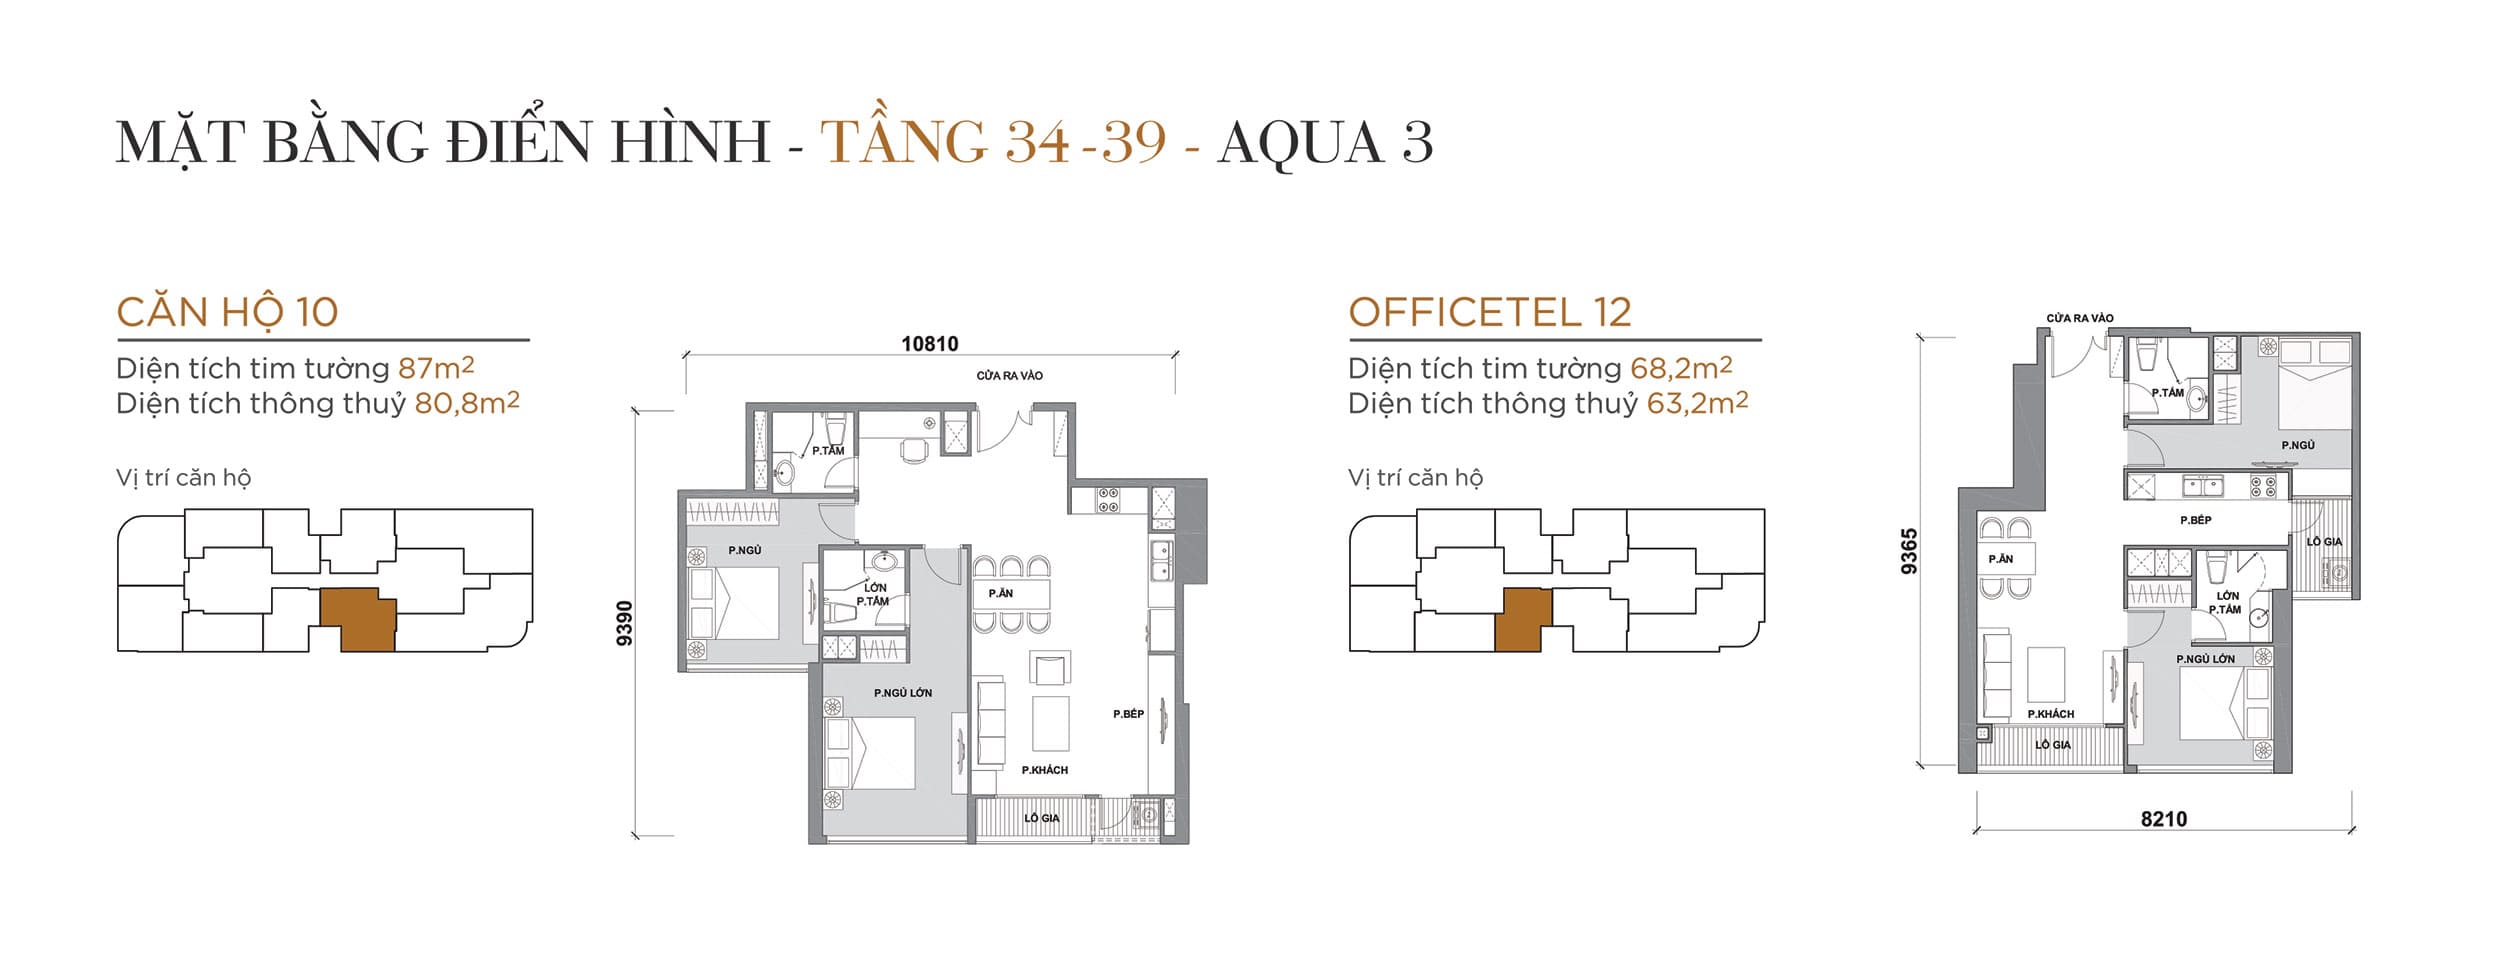 Layout thiết kế điển hình Tầng 34 đến Tầng 39 Tòa Aqua 3 loại Căn hộ 10, Officetel 12.